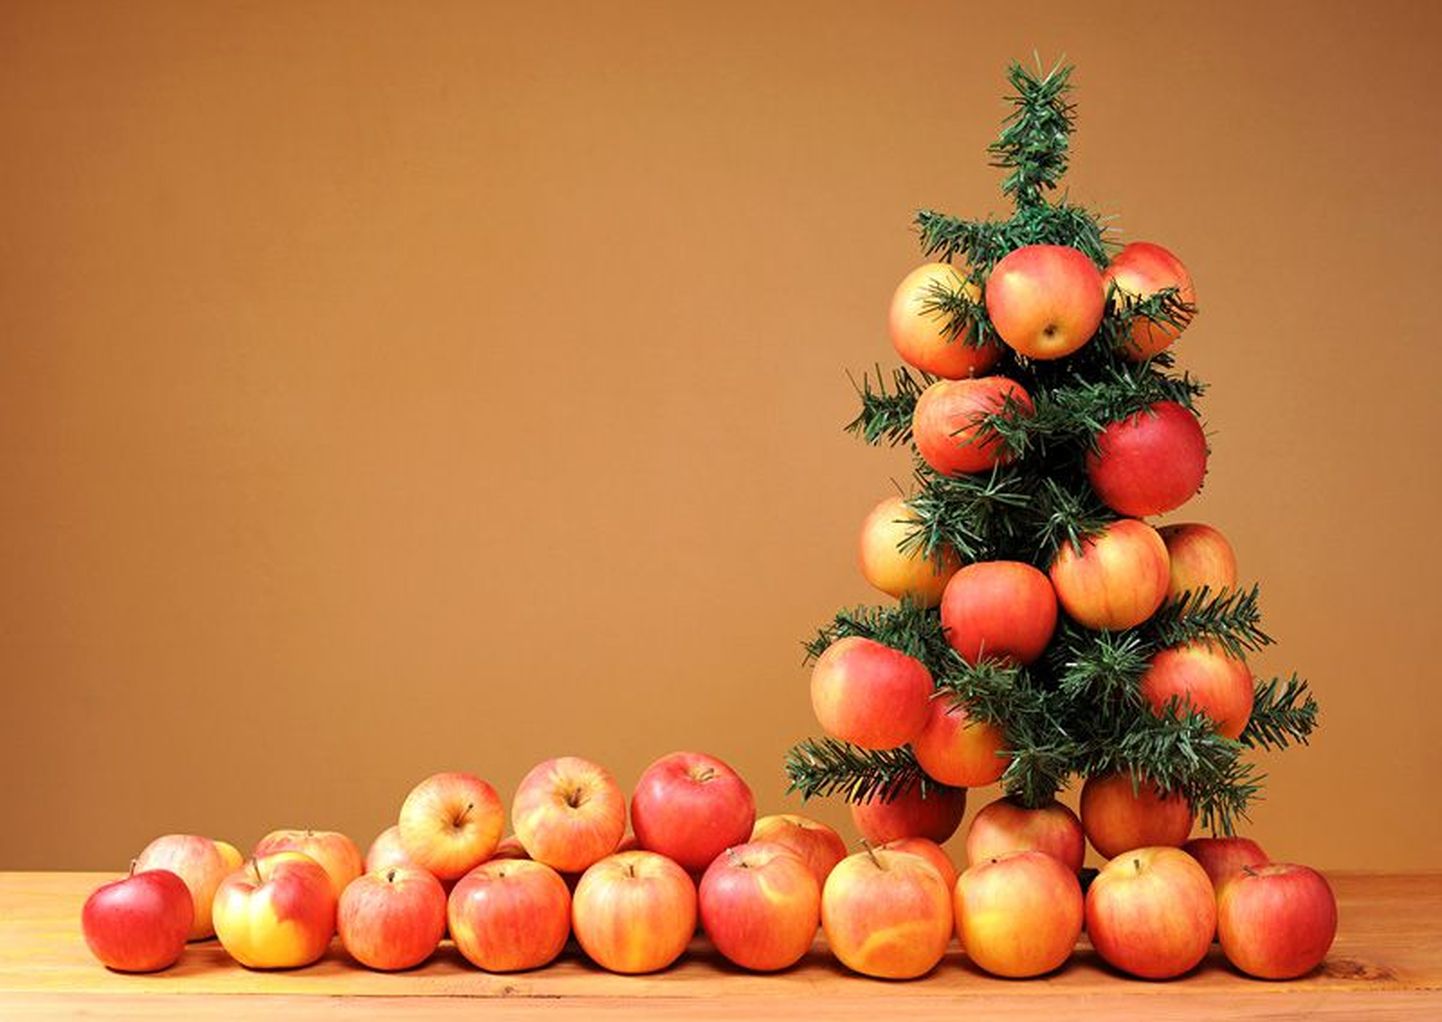 Kümned tuhanded inimesed üle ilma on päeva rõõmsalt omaks võtnud ja tähistavad seda enamasti õunu kasutades: kaunistavad puid õuntega (aga nii, et need aeg-ajalt maha pudeneksid), kingivad üksteisele õunu (ikka nii, et mõni neist maha potsatab) ja soovivad: “Happy grav-mass!”